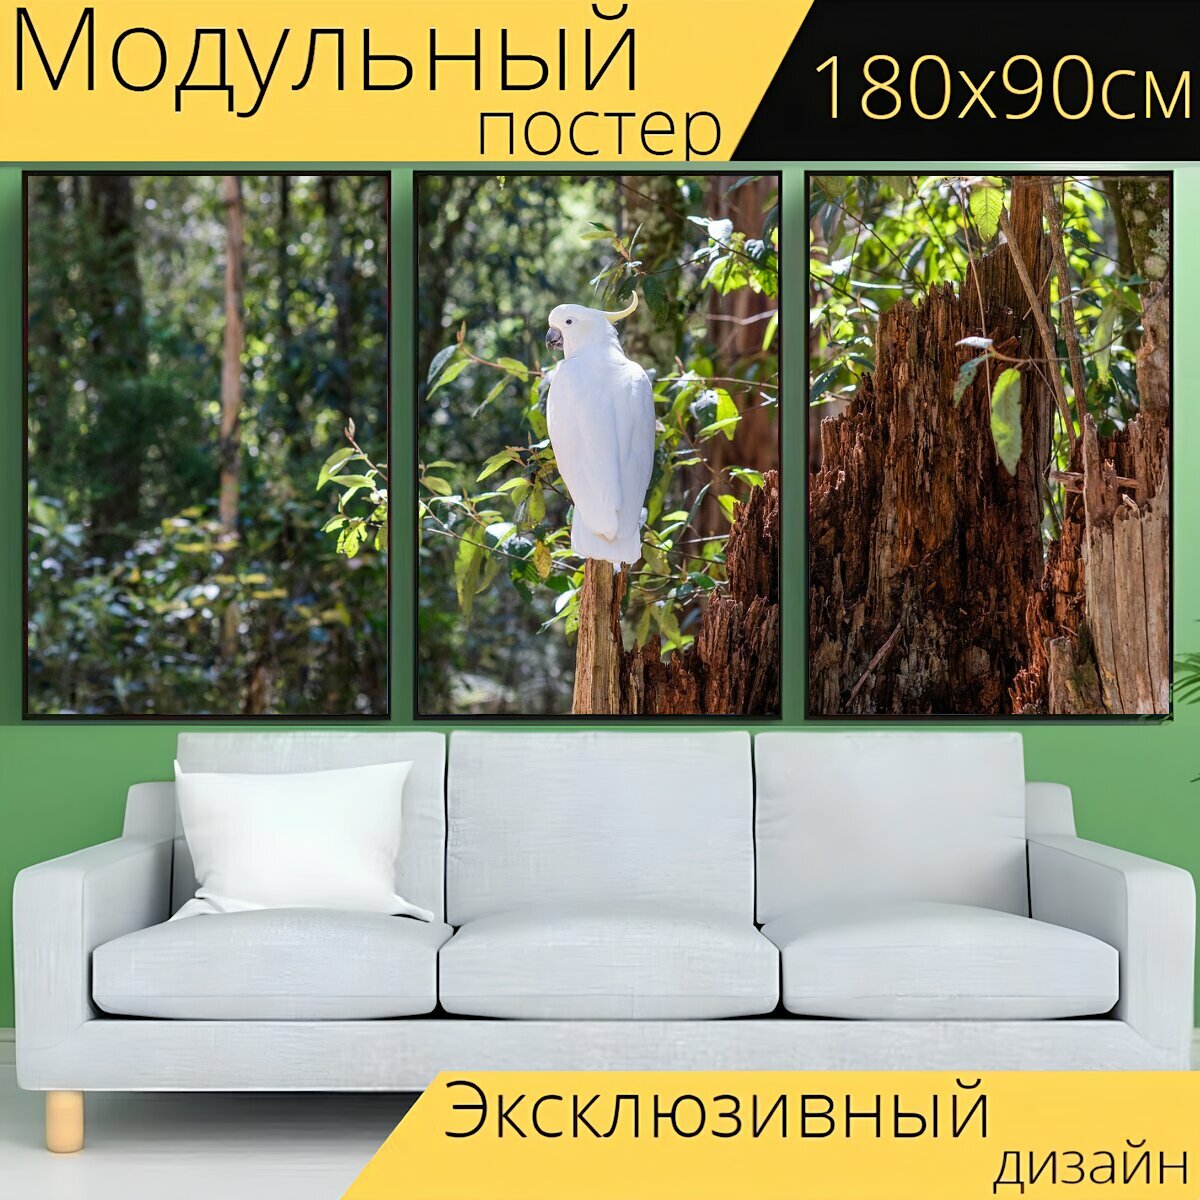 Модульный постер "Серный какаду, какаду, птица" 180 x 90 см. для интерьера